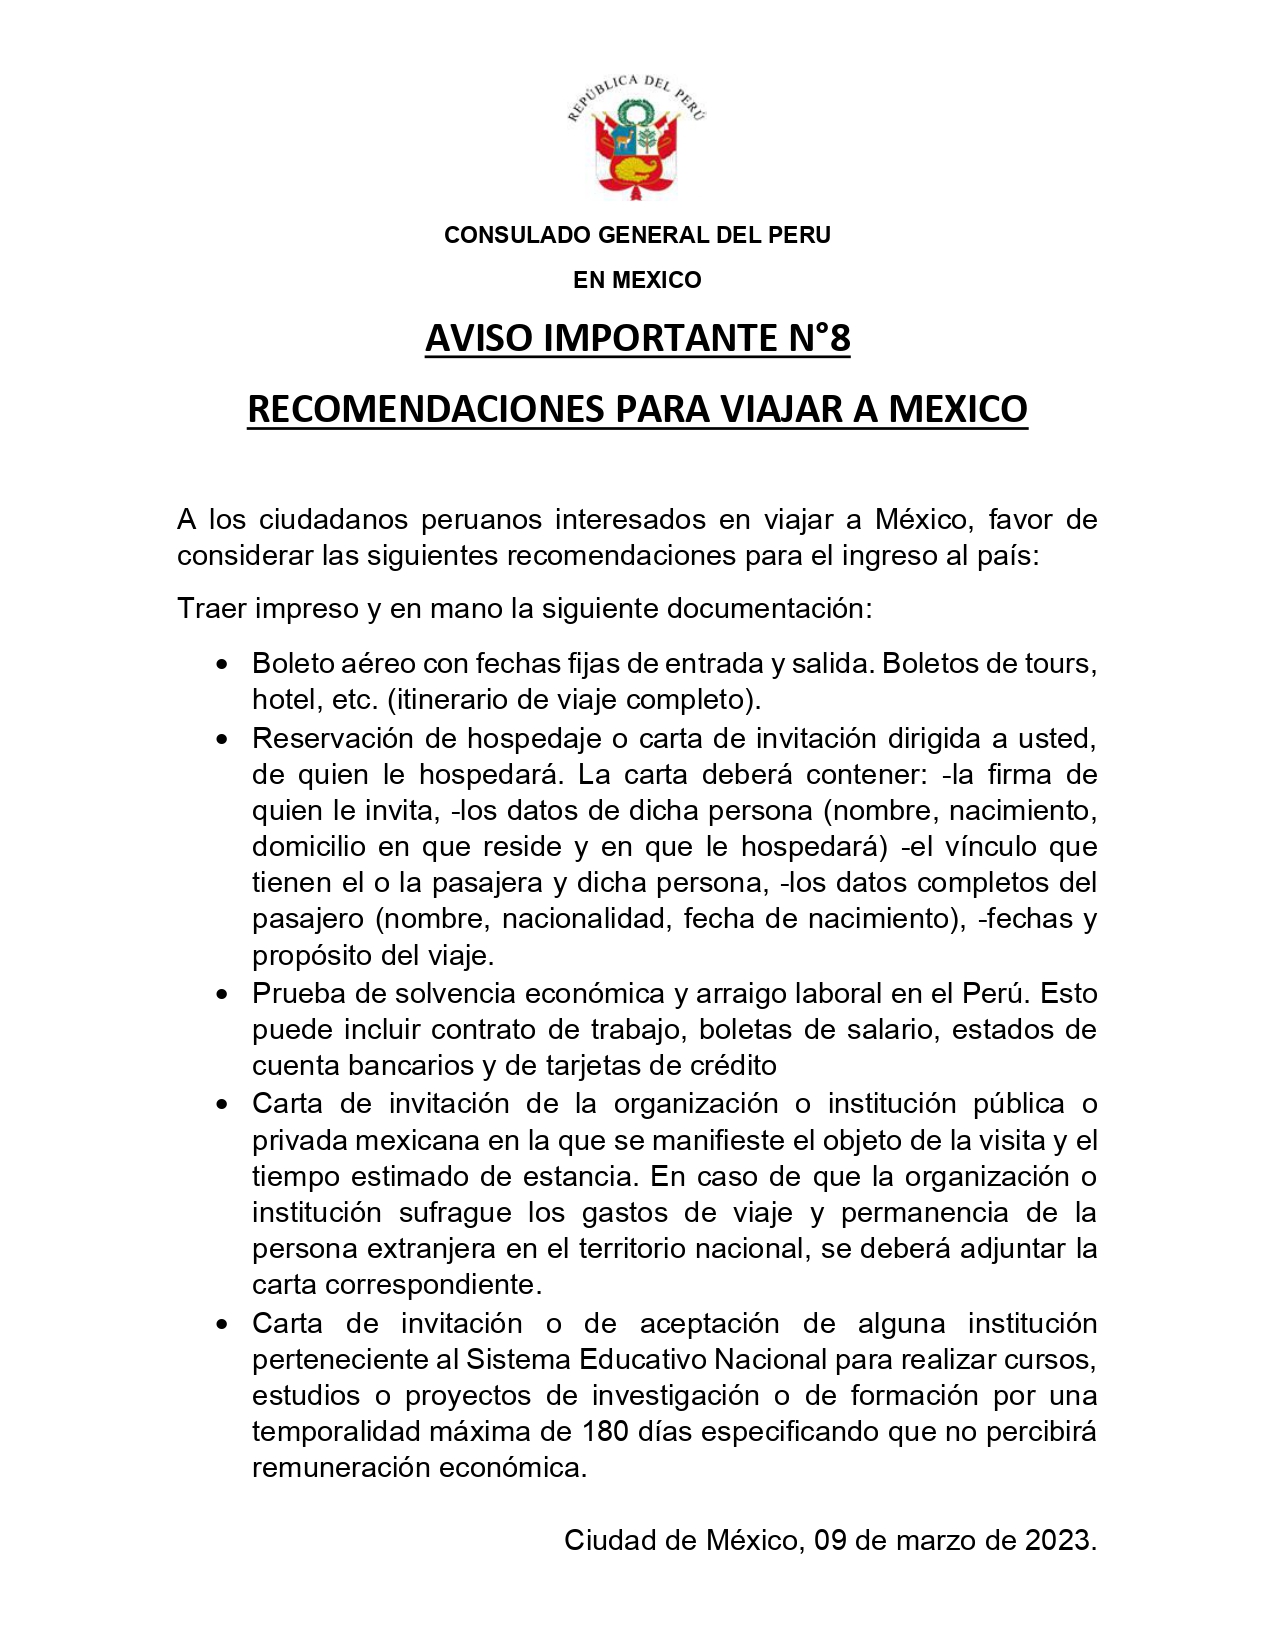 AVISO N 8 RECOMENDACIONES PARA VIAJAR A MEXICO_page-0001.jpg